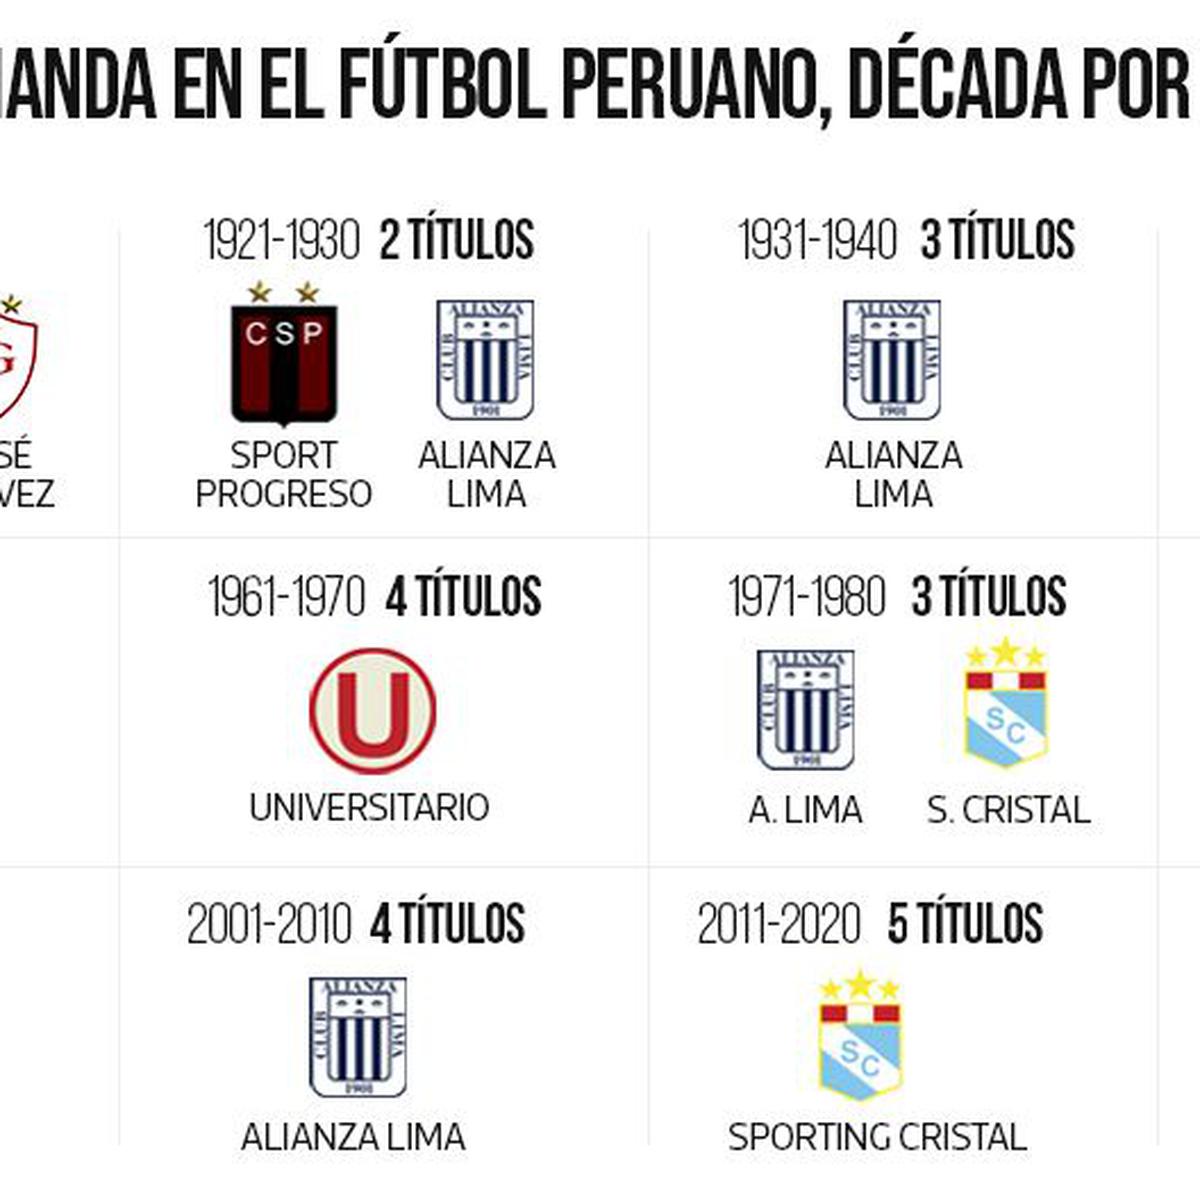 ¿Cuántas copas ha ganado Alianza Lima